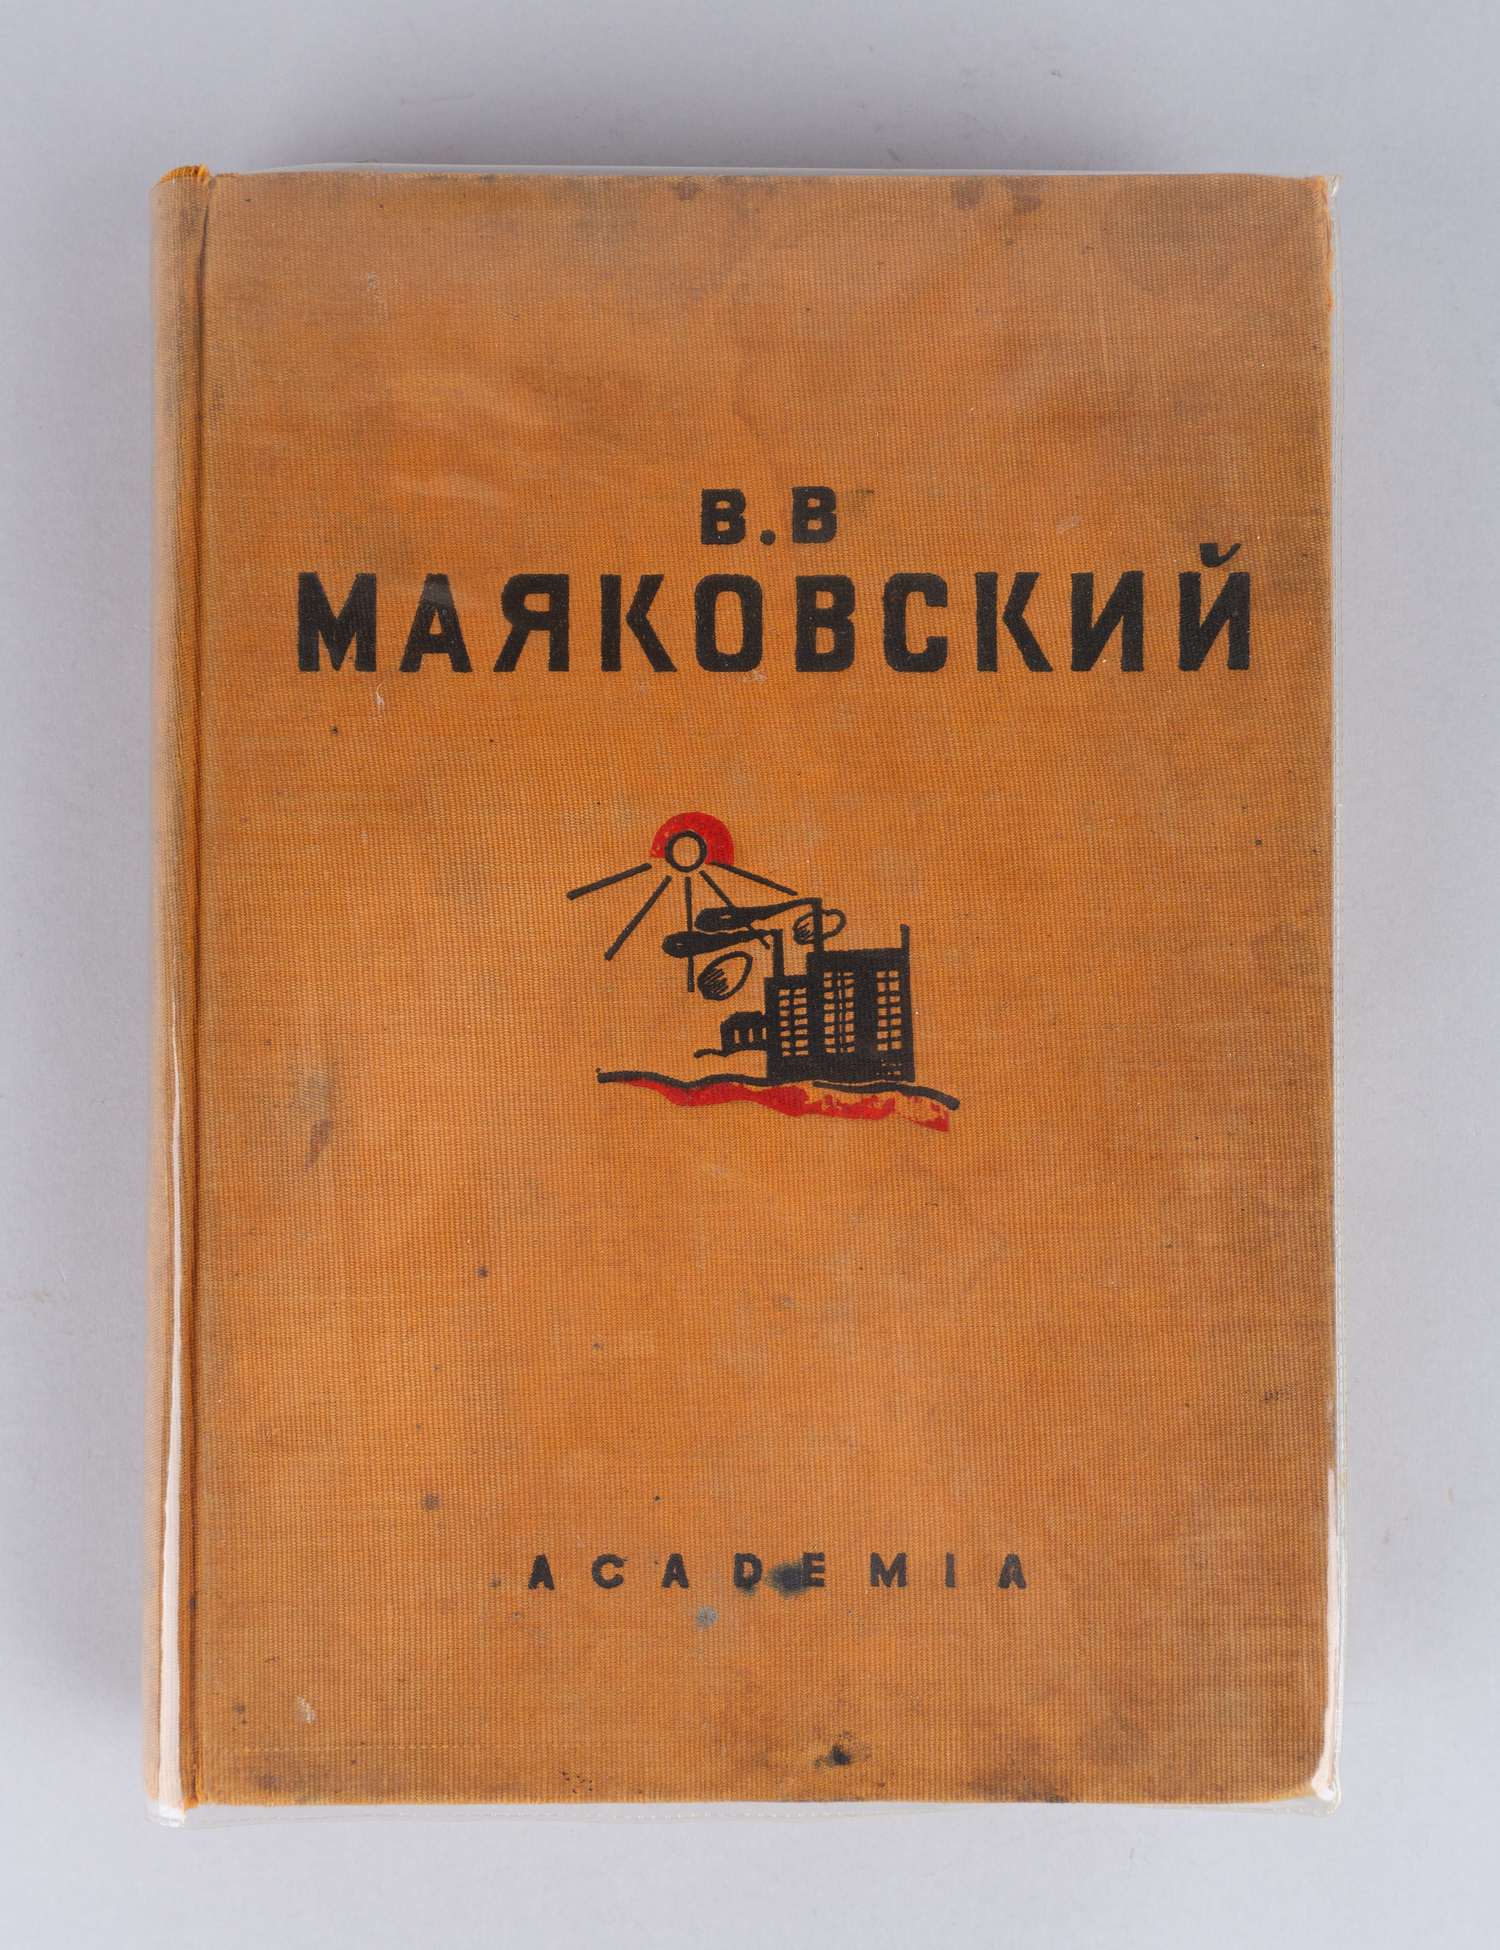 Маяковский В.В. Избранные стихи (М.-Л., 1936).